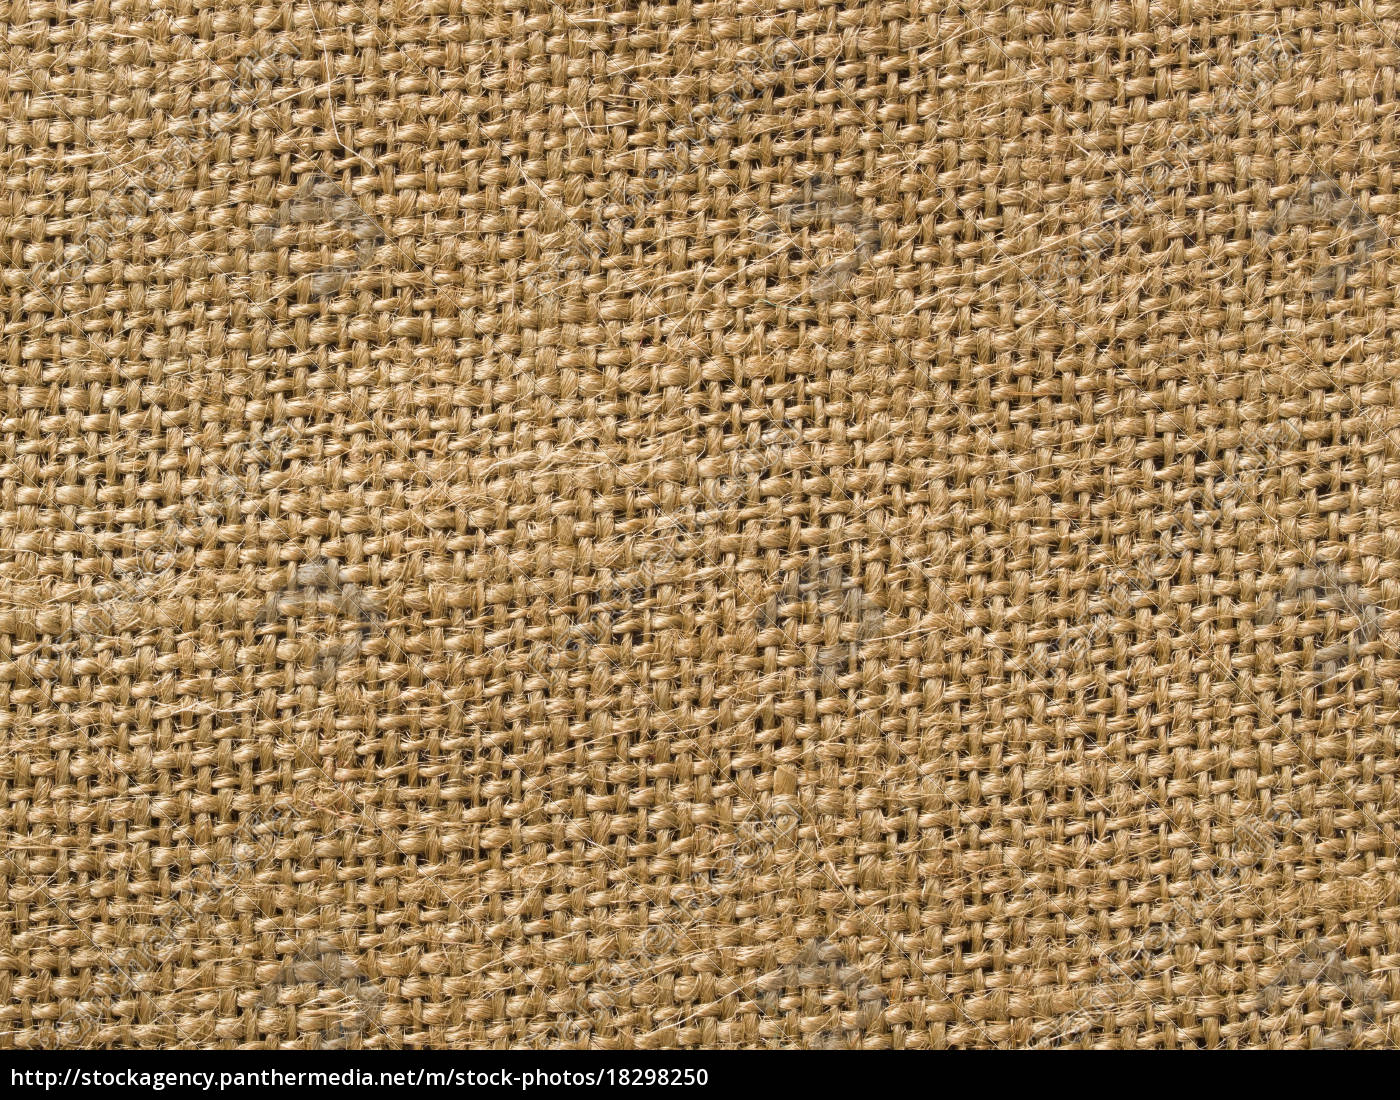 Textura y fondo de tela de saco marrón.